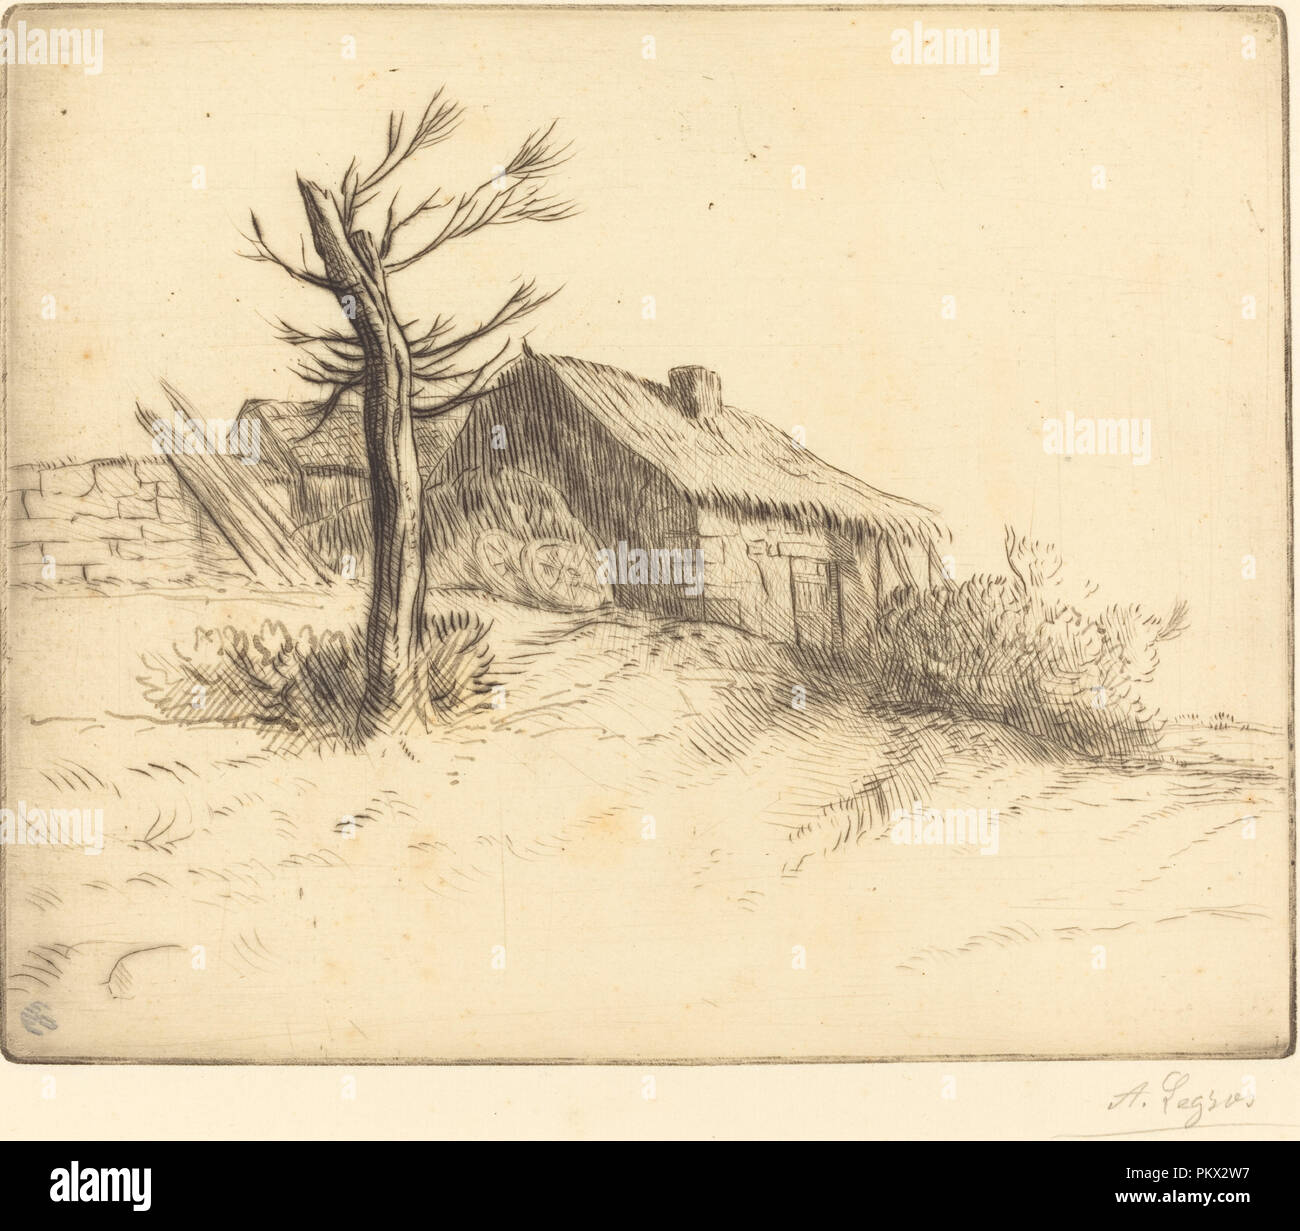 Cottage con il tetto di paglia (Chaumiere). Medium: attacco e puntasecca ritoccata con inchiostro. Museo: National Gallery of Art di Washington DC. Autore: Alphonse Legros. Foto Stock